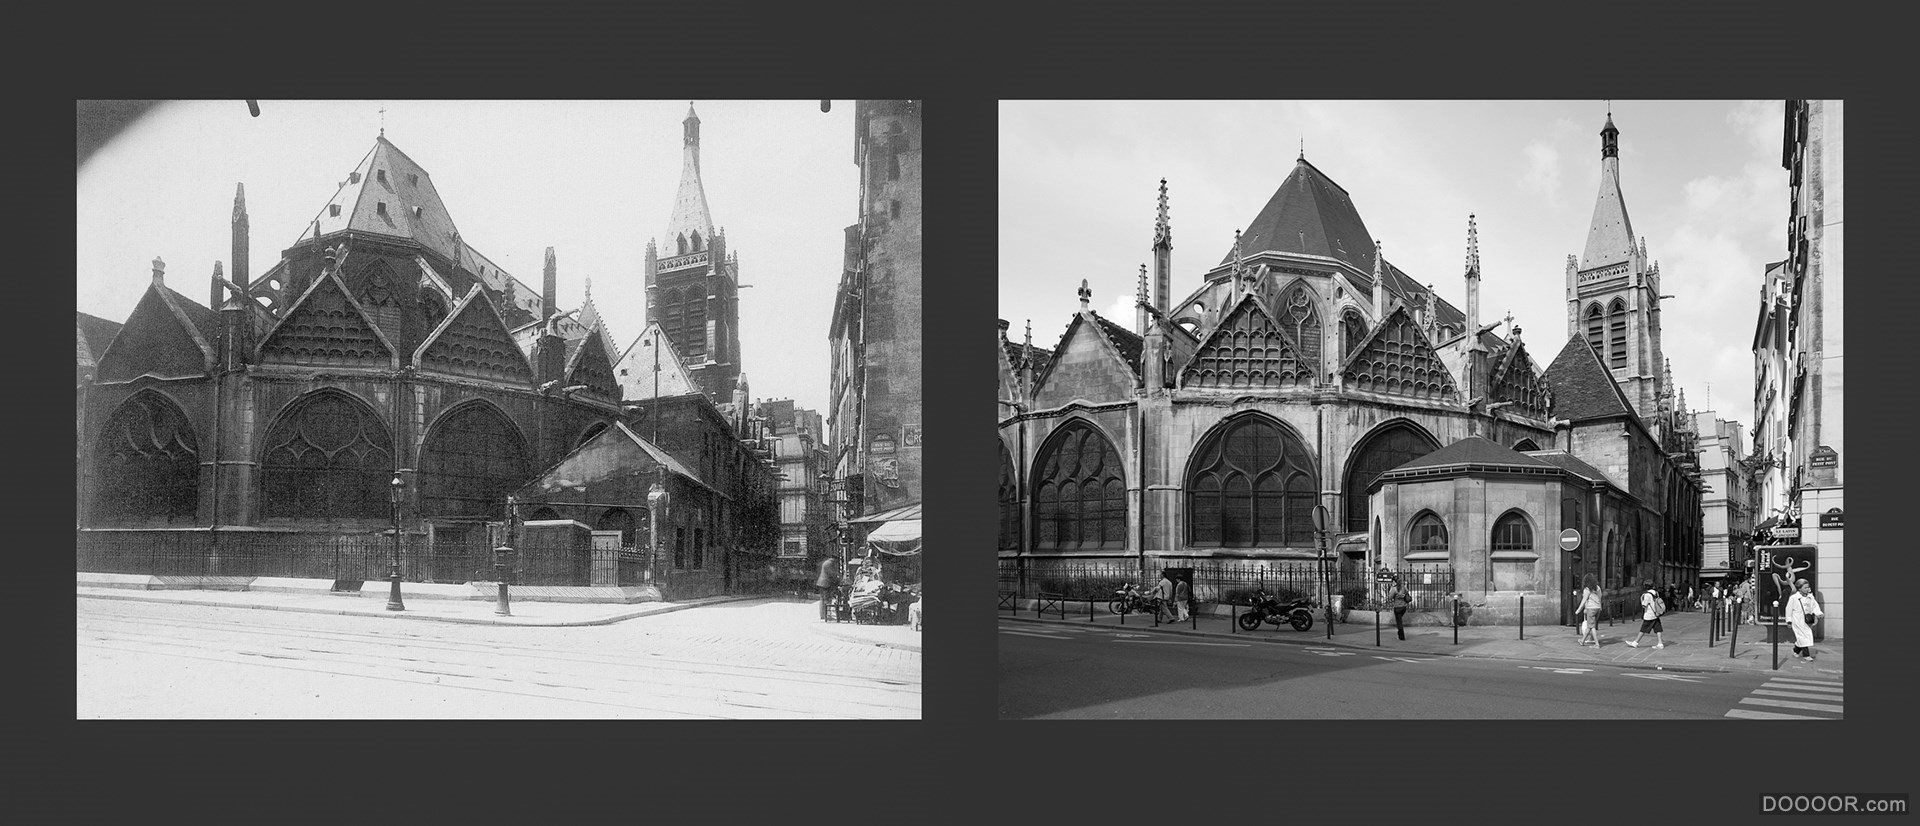 过去与现在-巴黎街头照片对比 [50P] (44).jpg